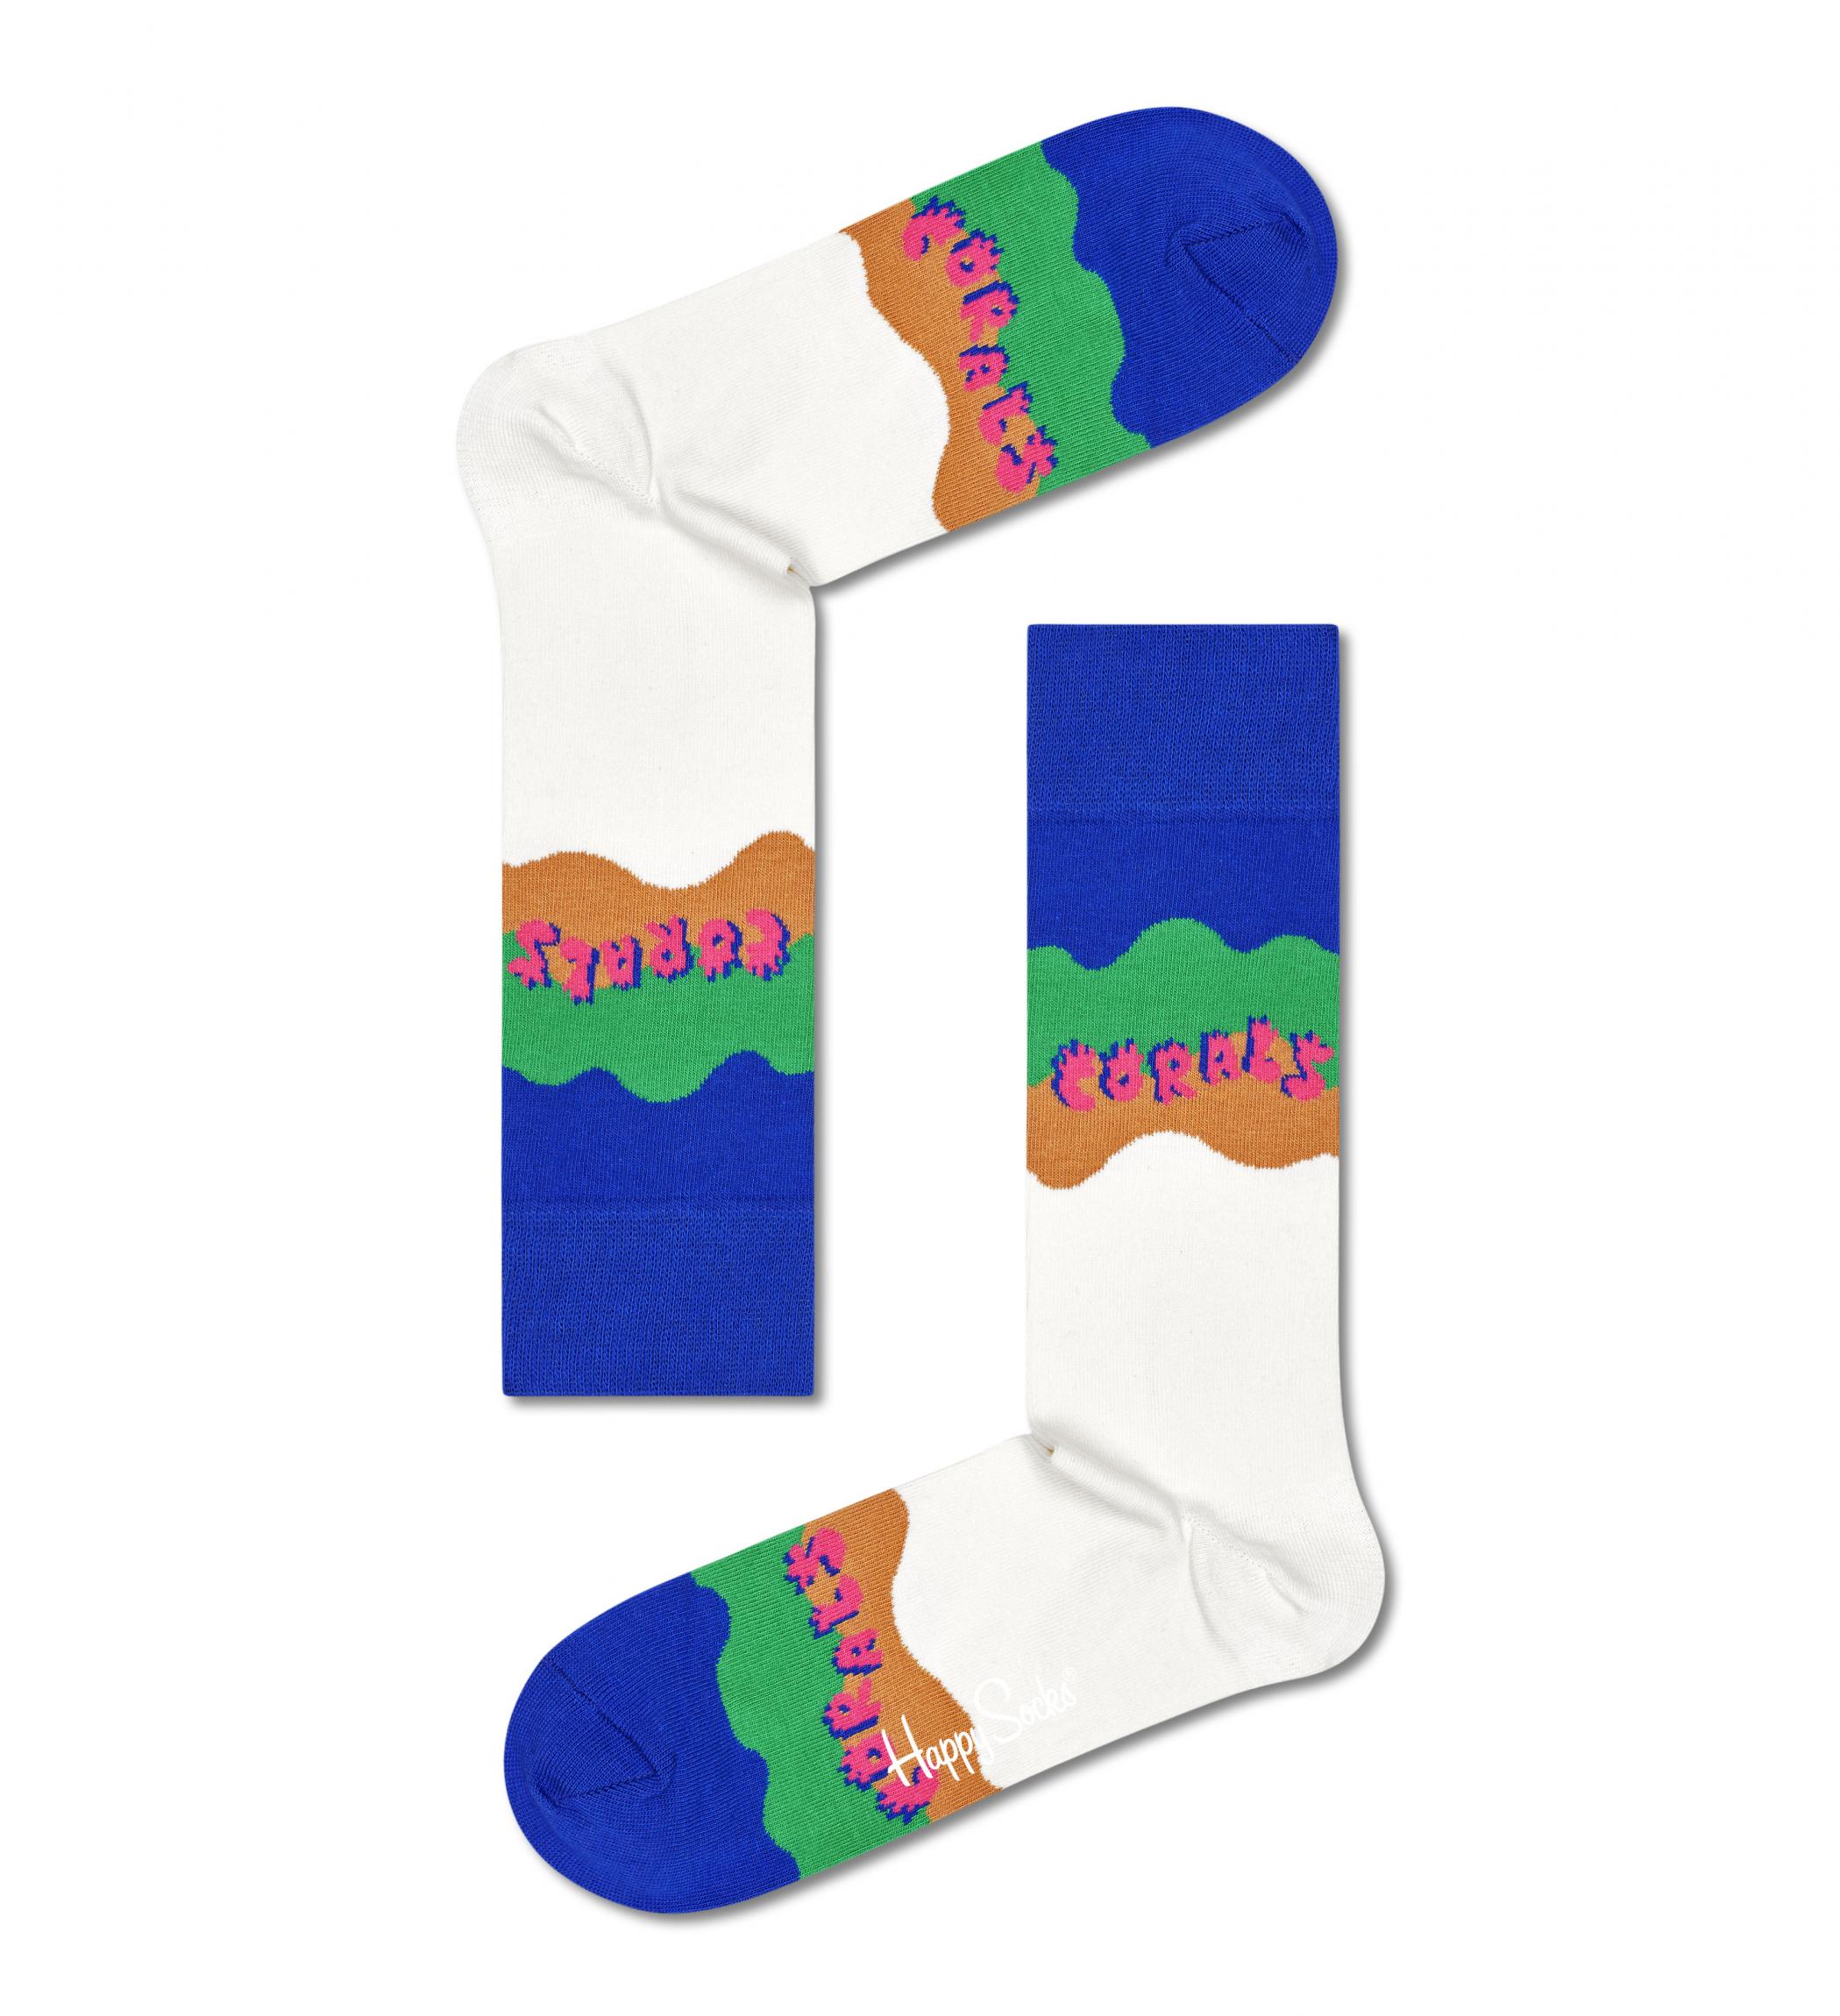 Barevné ponožky Happy Socks x WWF, vzor Coral Reef Rescue